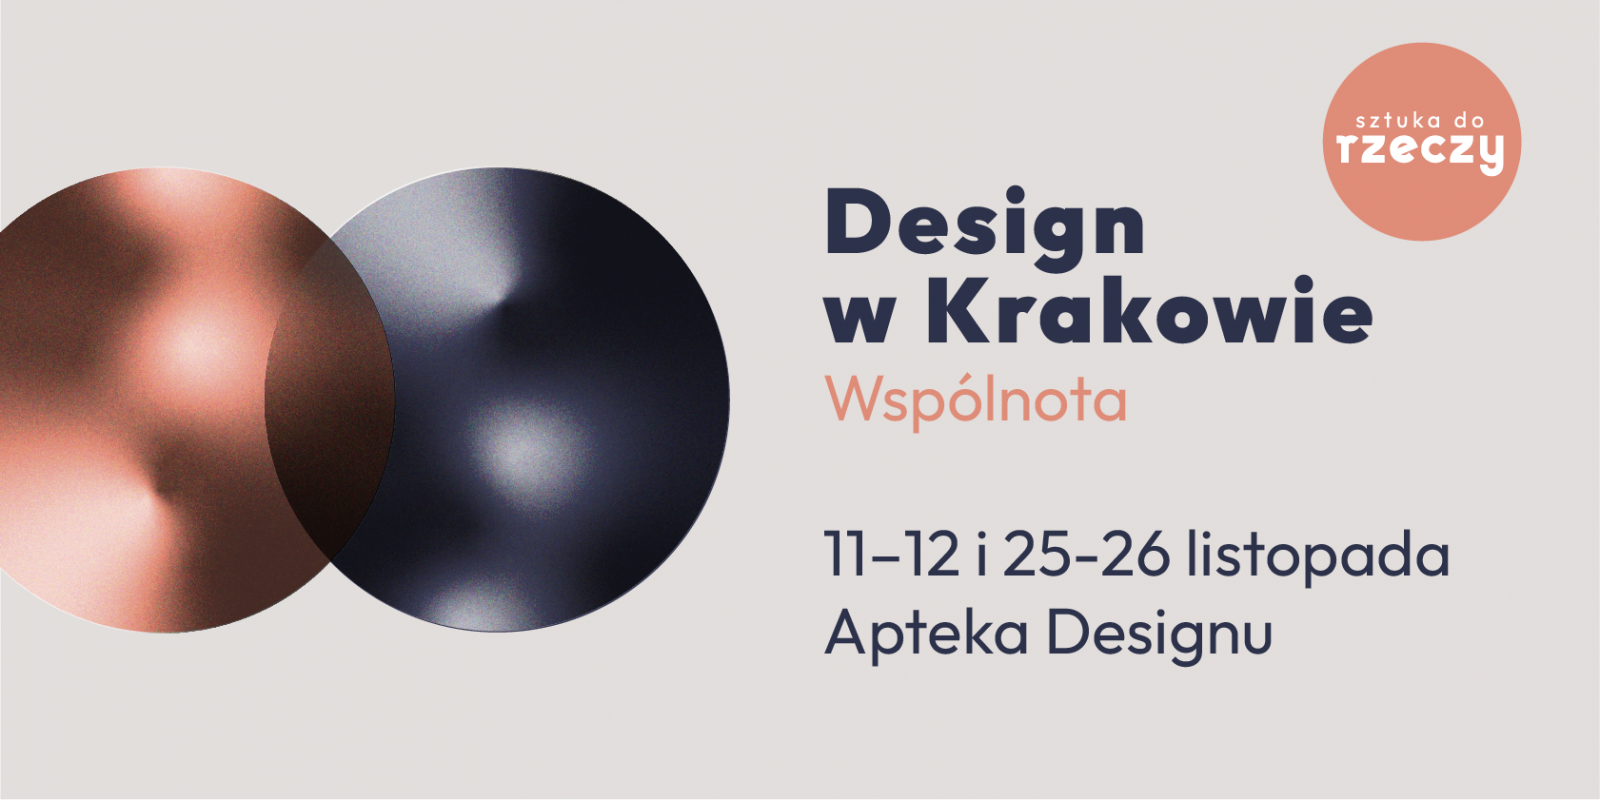 Design w Krakowie 